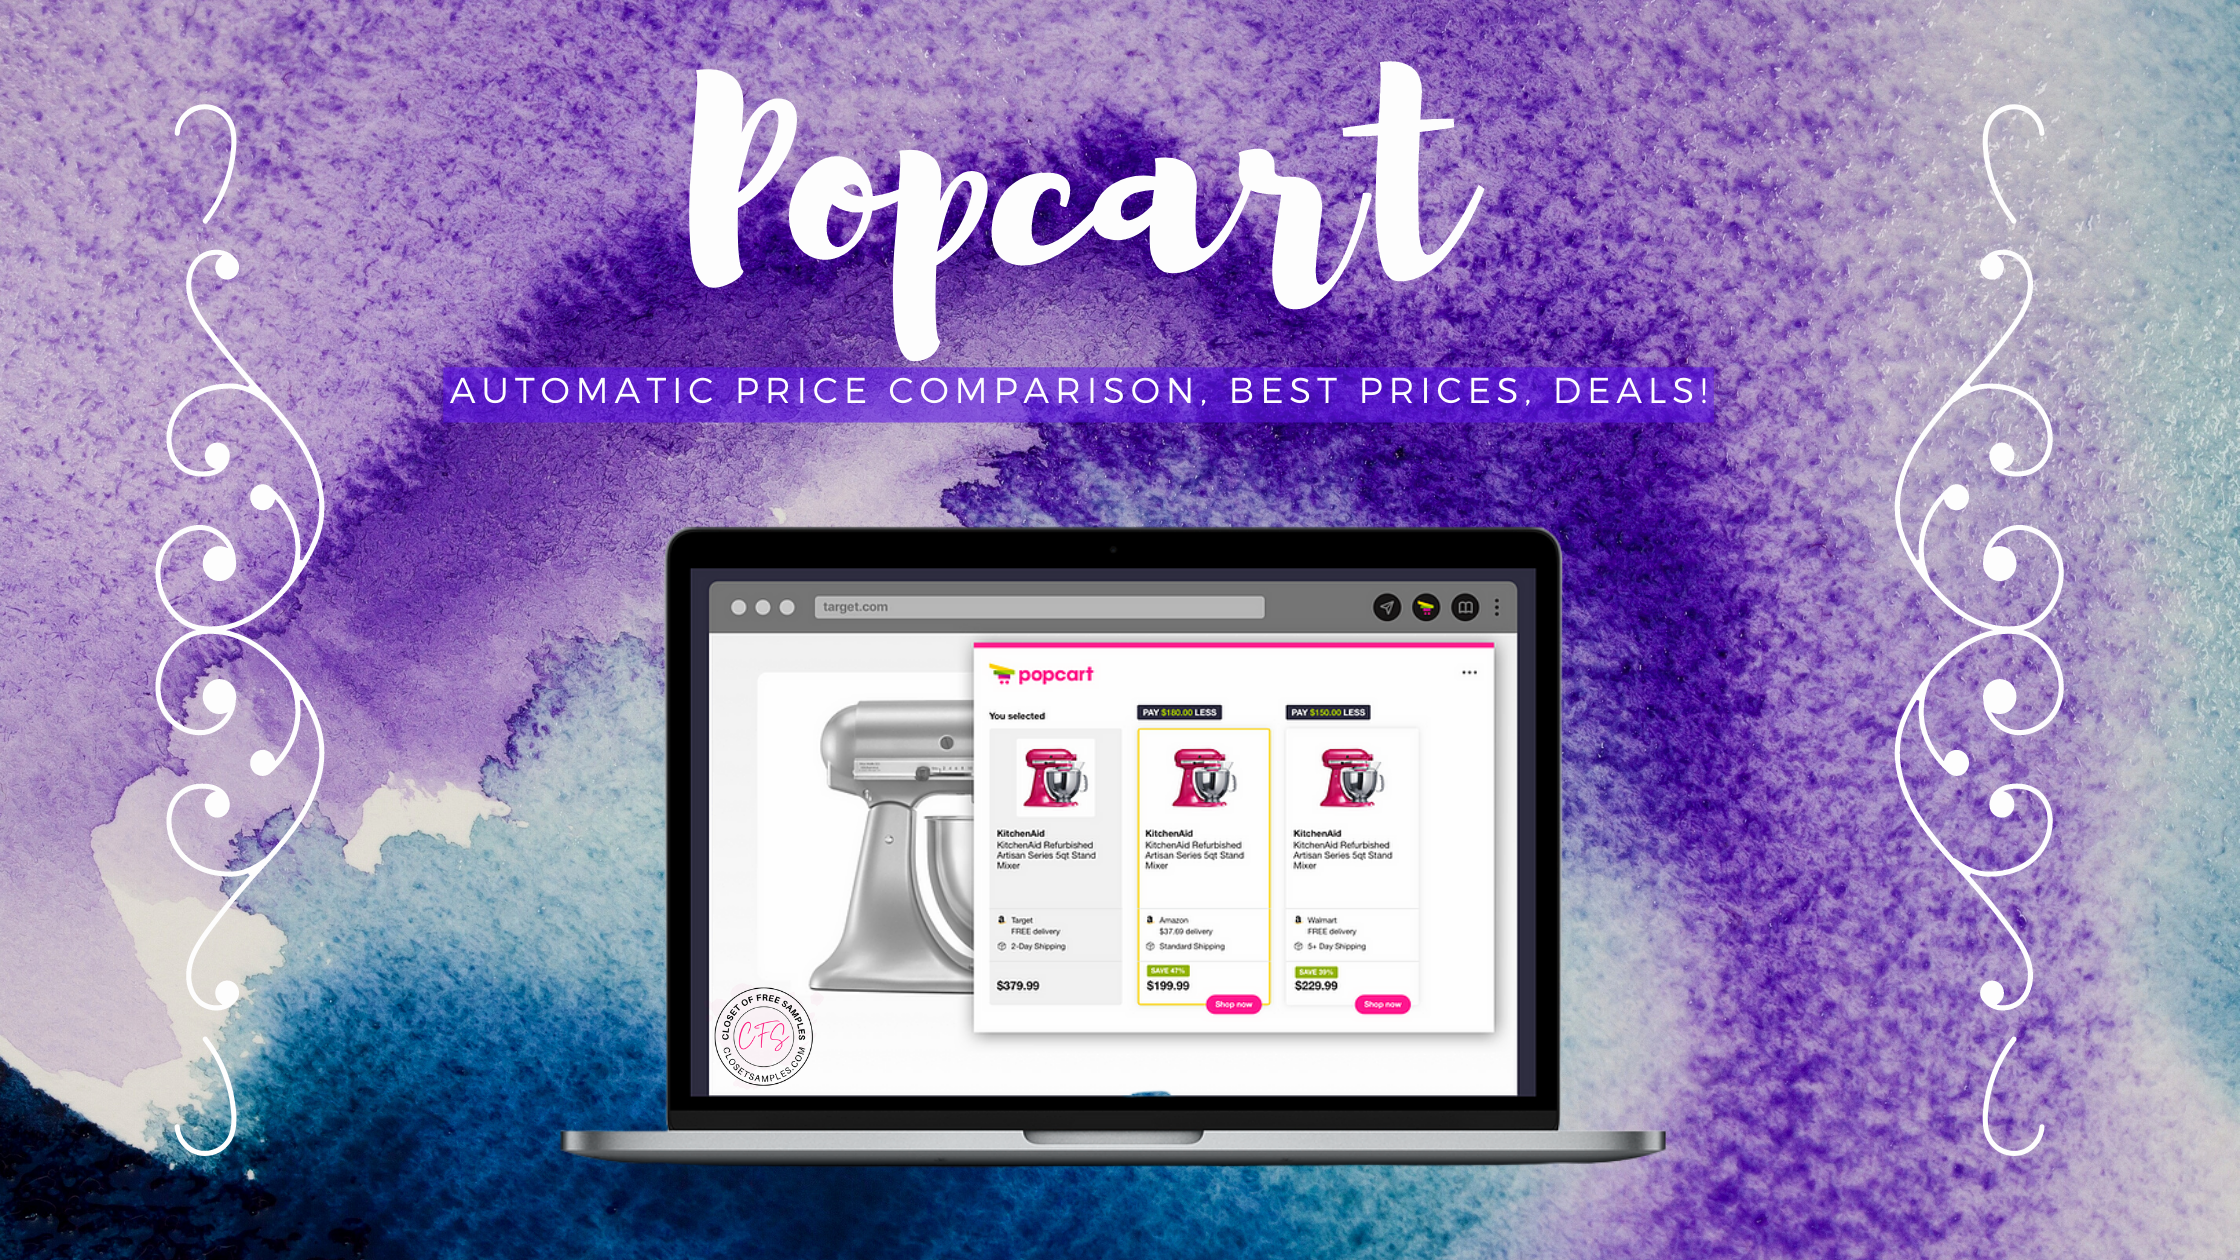 Popcart: Automatic Price Comparison, Best Prices, Deals!